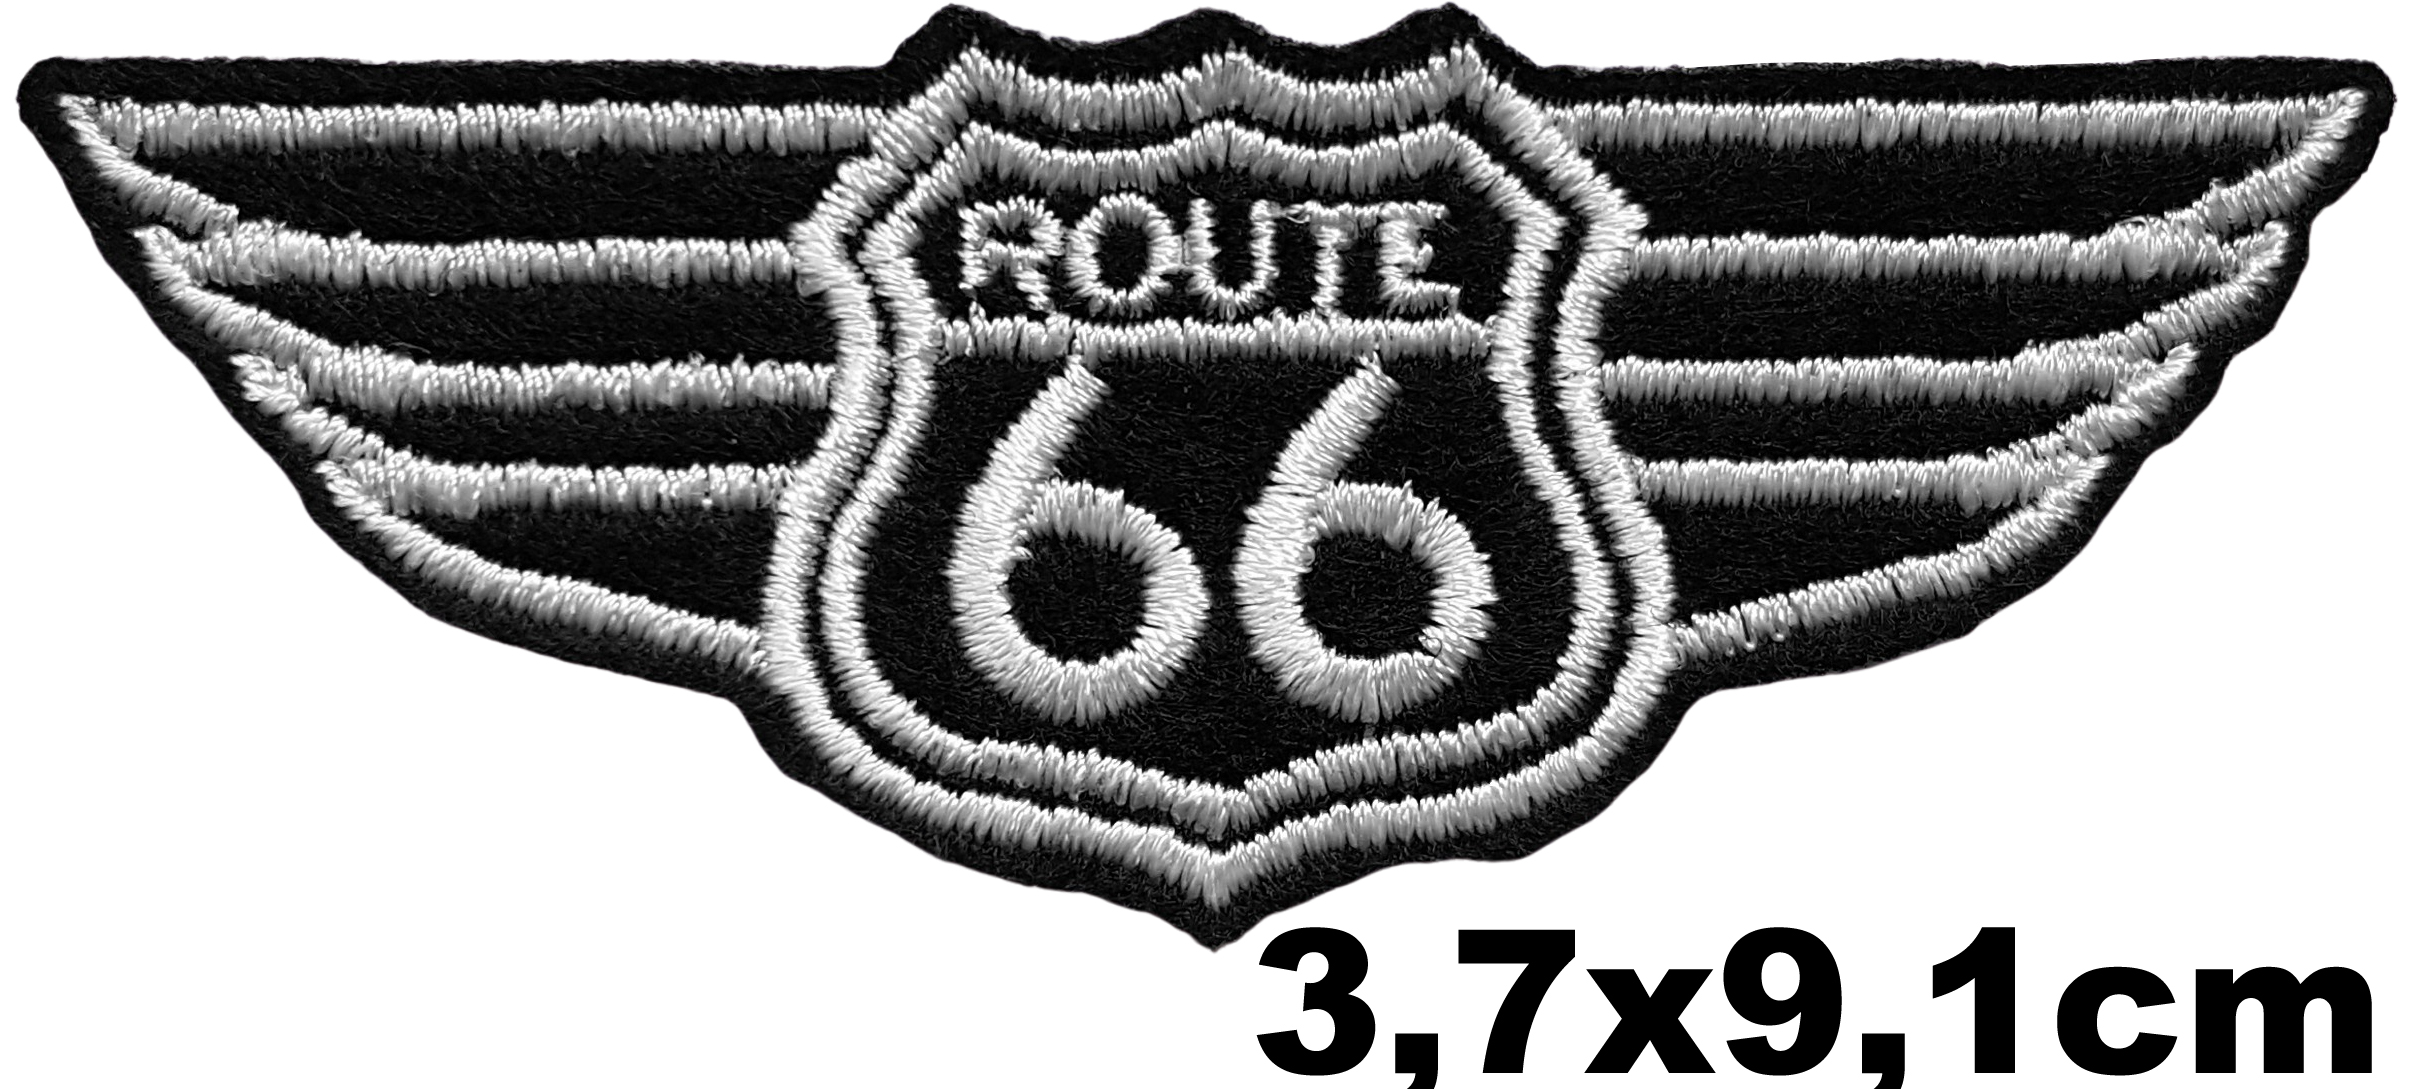 Patch Thermocollant Route 66 Ailés